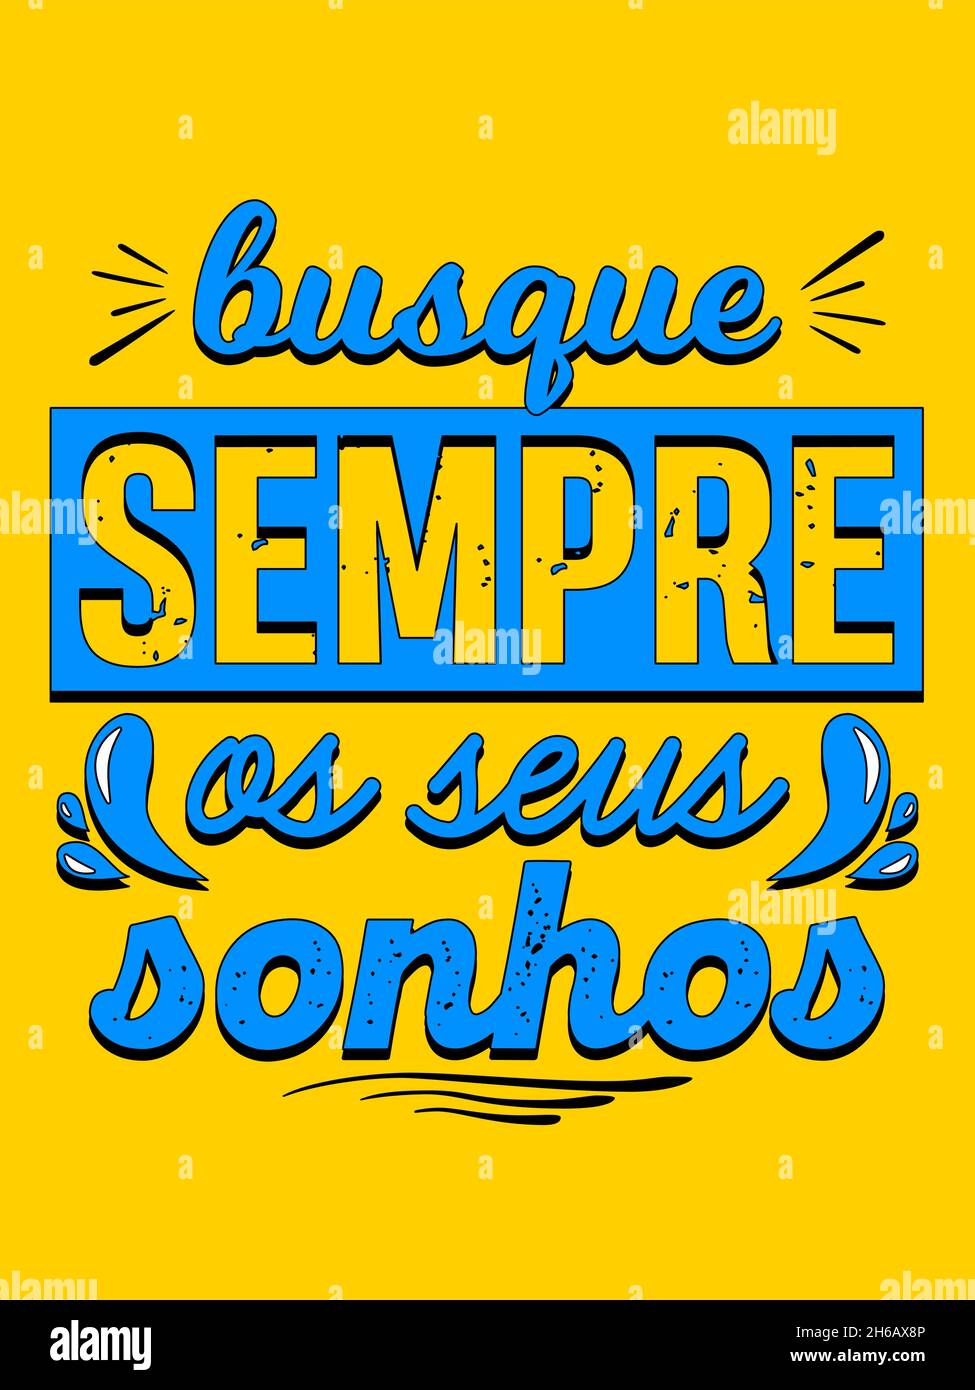 Affiche de motivation portugaise.Traduction du portugais: 'Toujours chercher vos rêves' Illustration de Vecteur